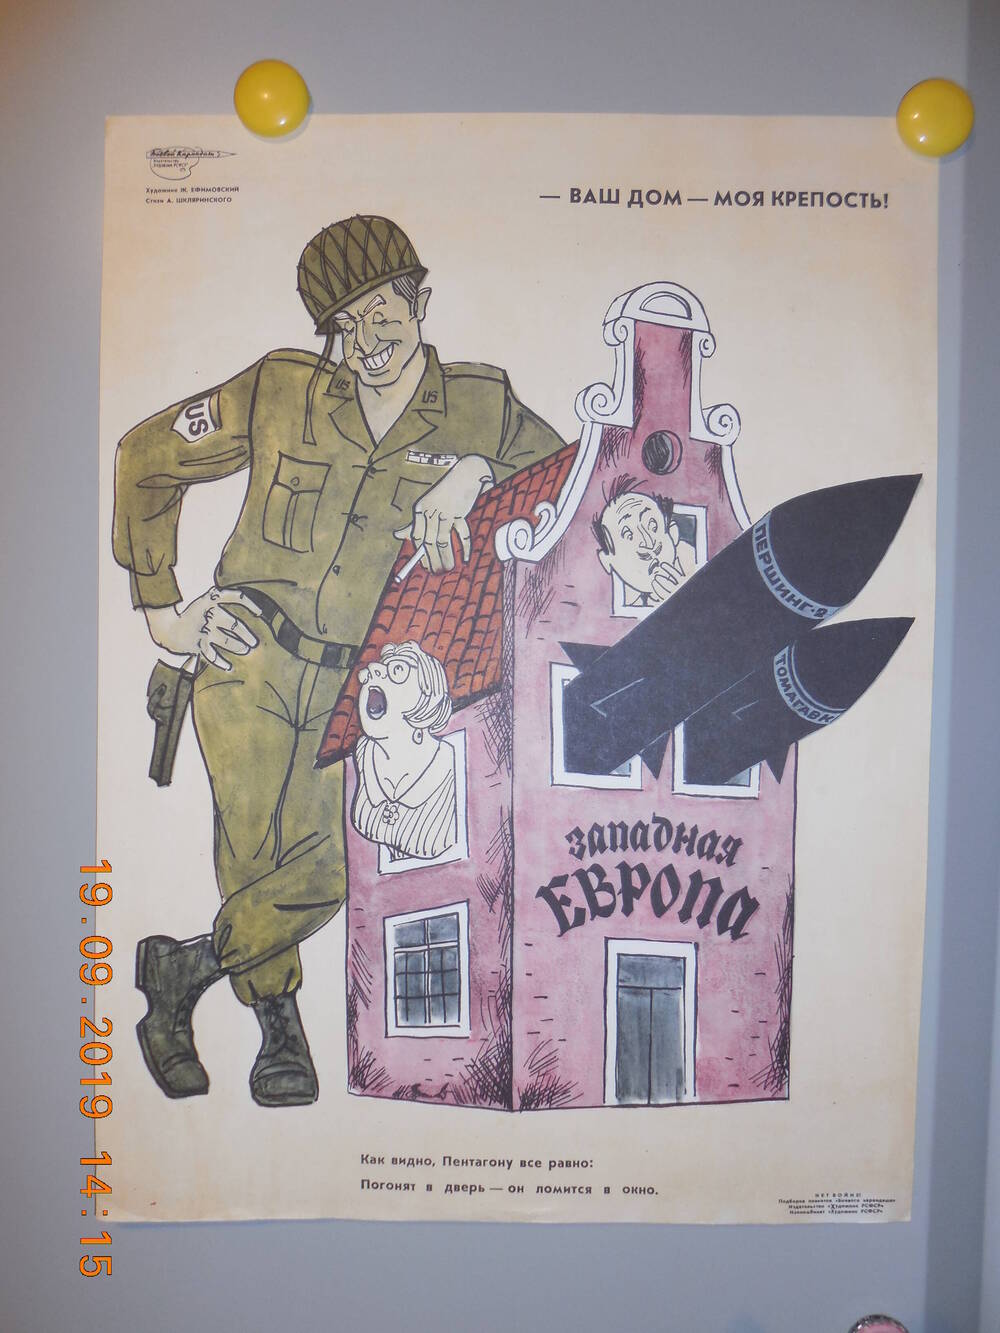 Плакат из подборки сатирических плакатов творческого объединения Боевой карандаш - НЕТ ВОЙНЕ
Ваш дом - моя крепость!